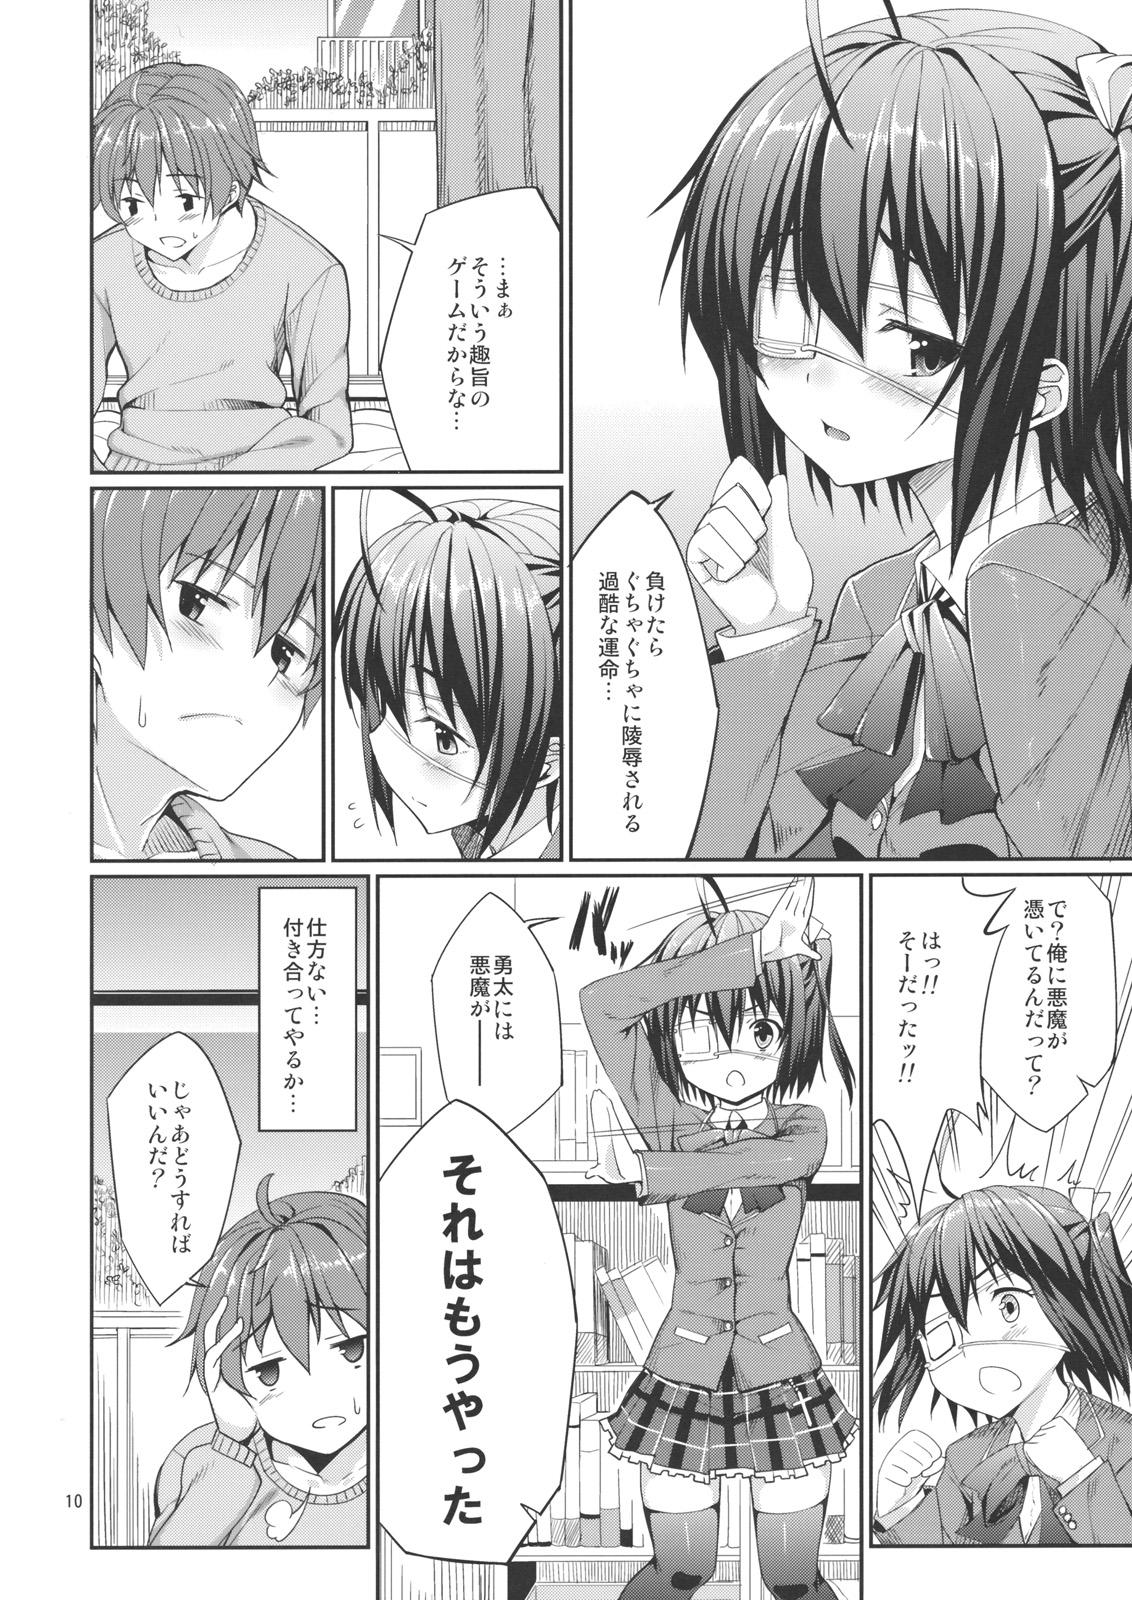 Petite Rikka to Shokushu to Mousou Settei! - Chuunibyou demo koi ga shitai Teenporno - Page 9